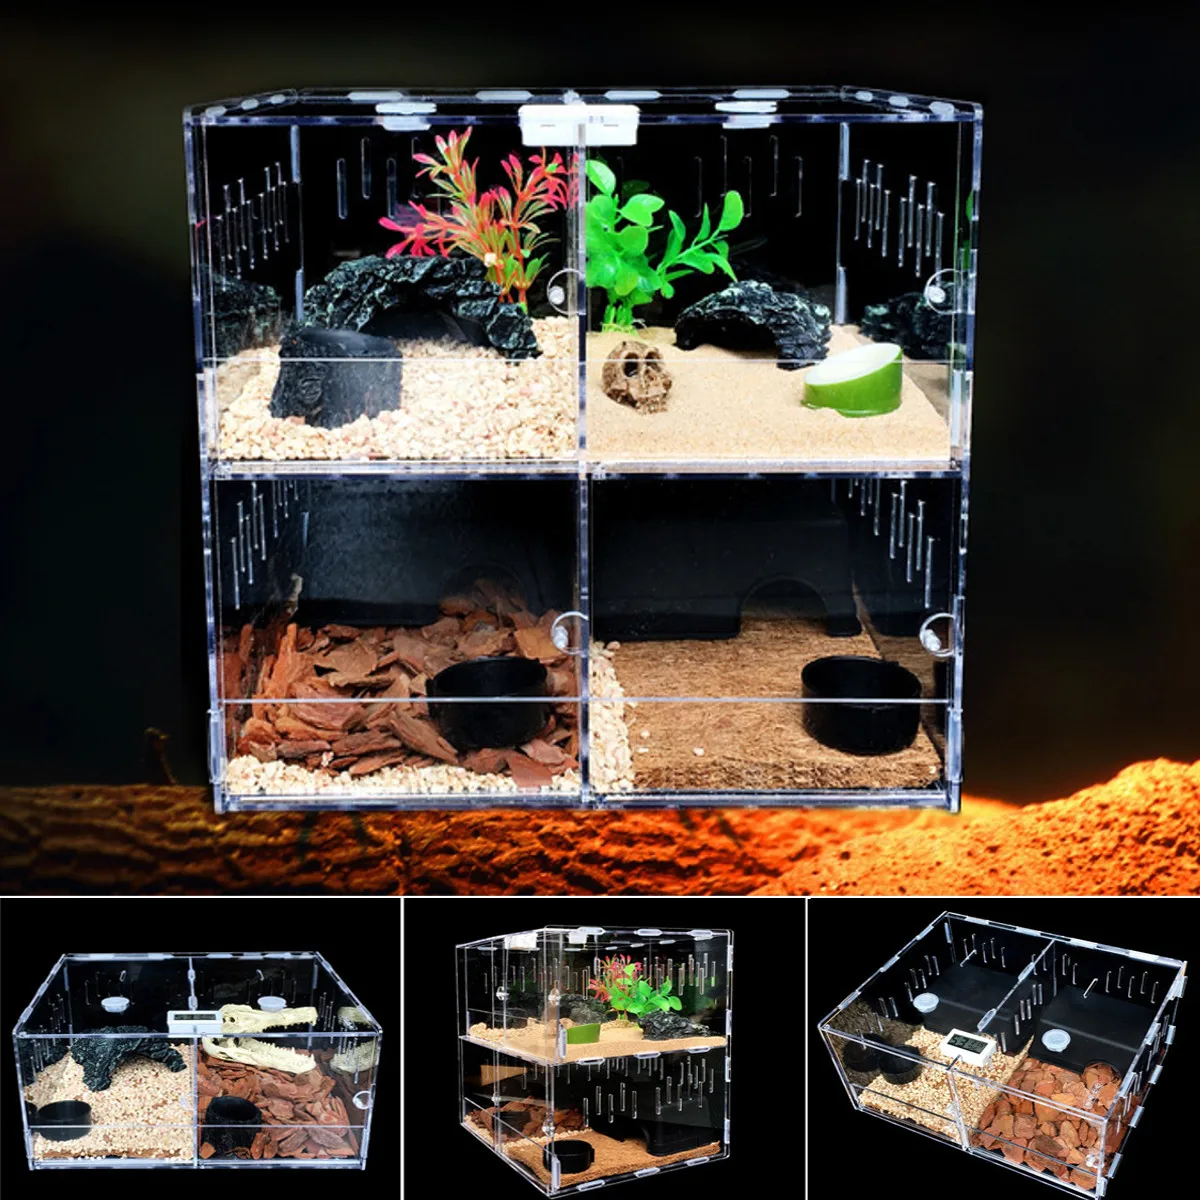 Контейнер для рептилий, акриловый Террариум для домашних животных, 4 сетки, пауки, ящерица, коробка для разведения черепахов, змей, домик, кле... от AliExpress RU&CIS NEW